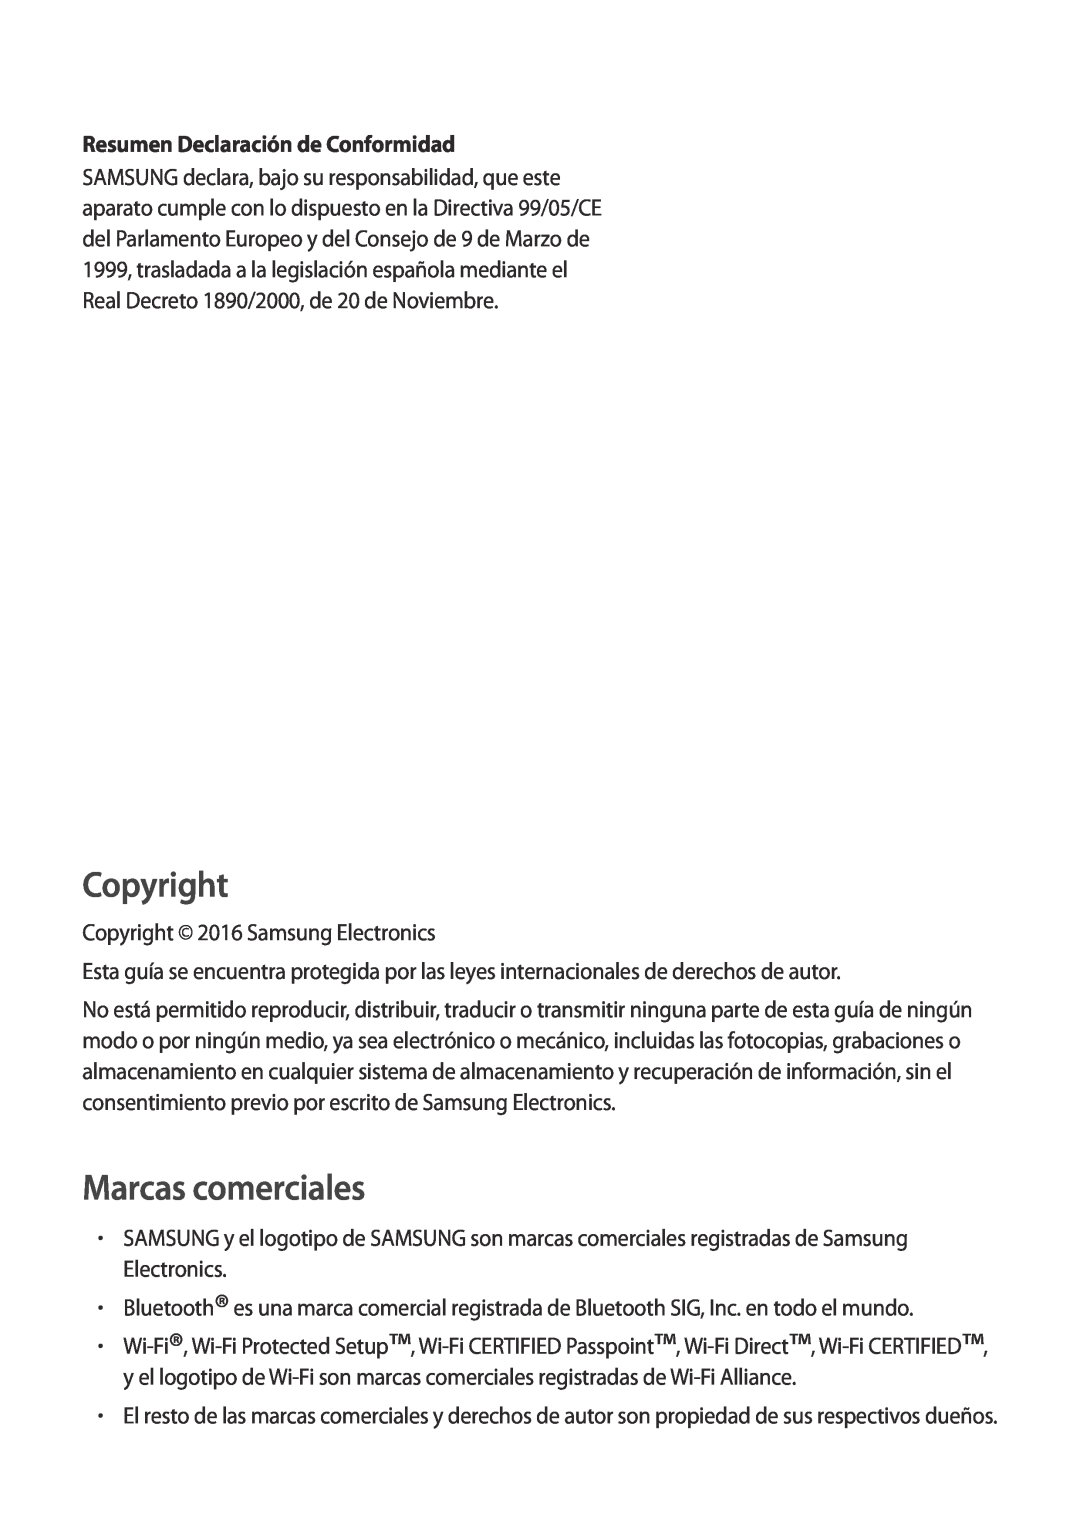 Samsung SM-G900FZDATPL, SM-G900FZKADBT, SM-G900FZWADBT Resumen Declaración de Conformidad, Copyright, Marcas comerciales 